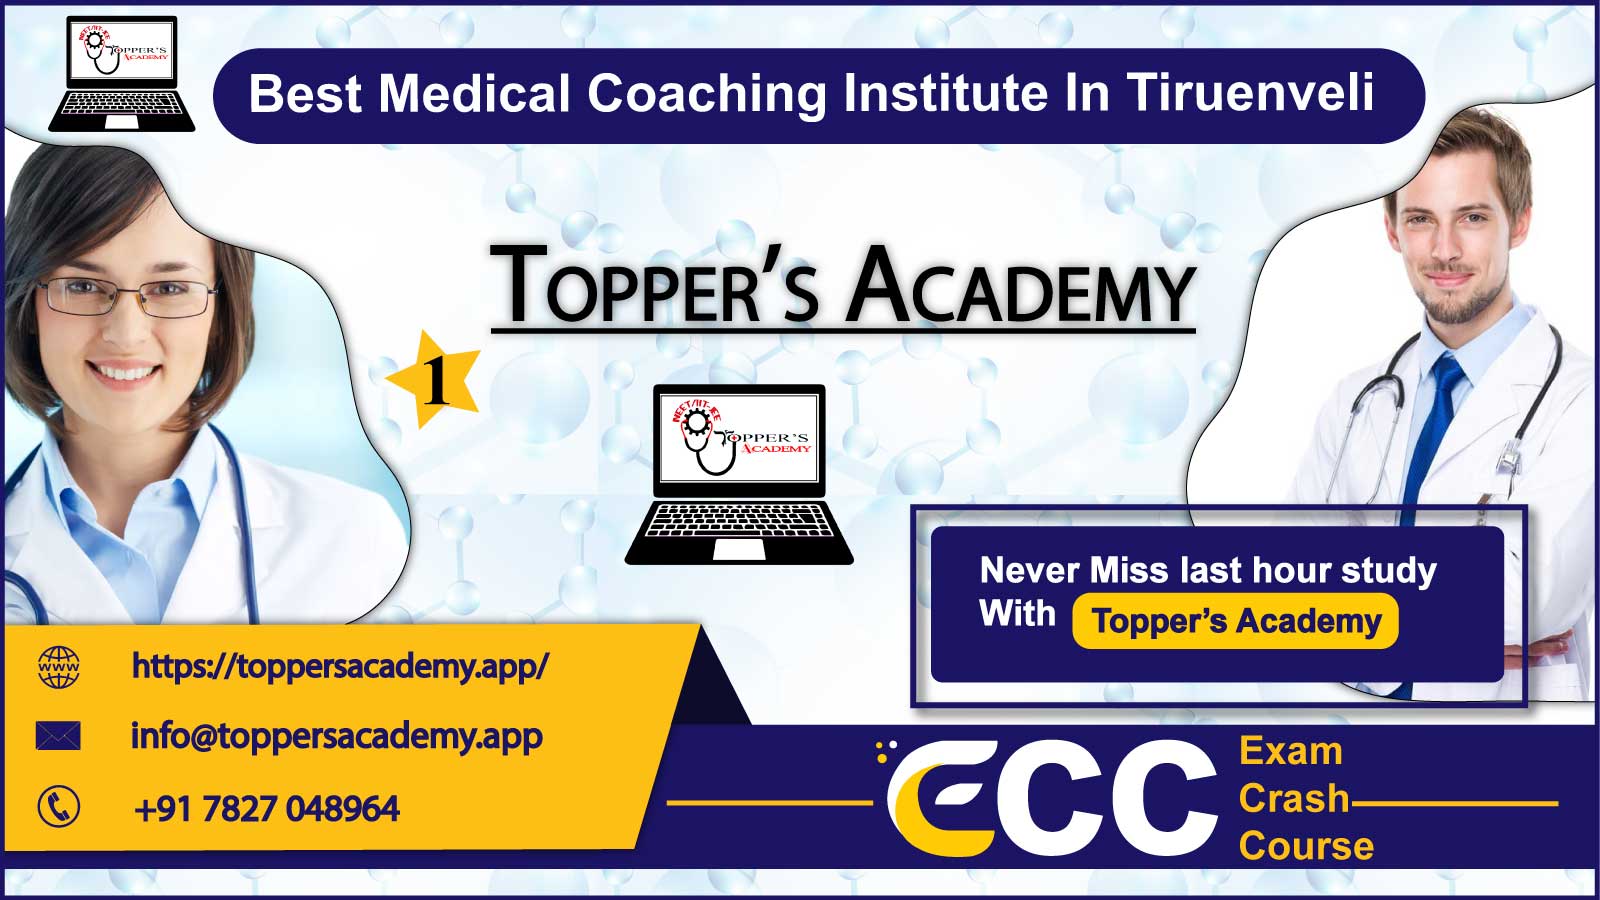 Toppers Academy NEET Coaching in Tiruenveli